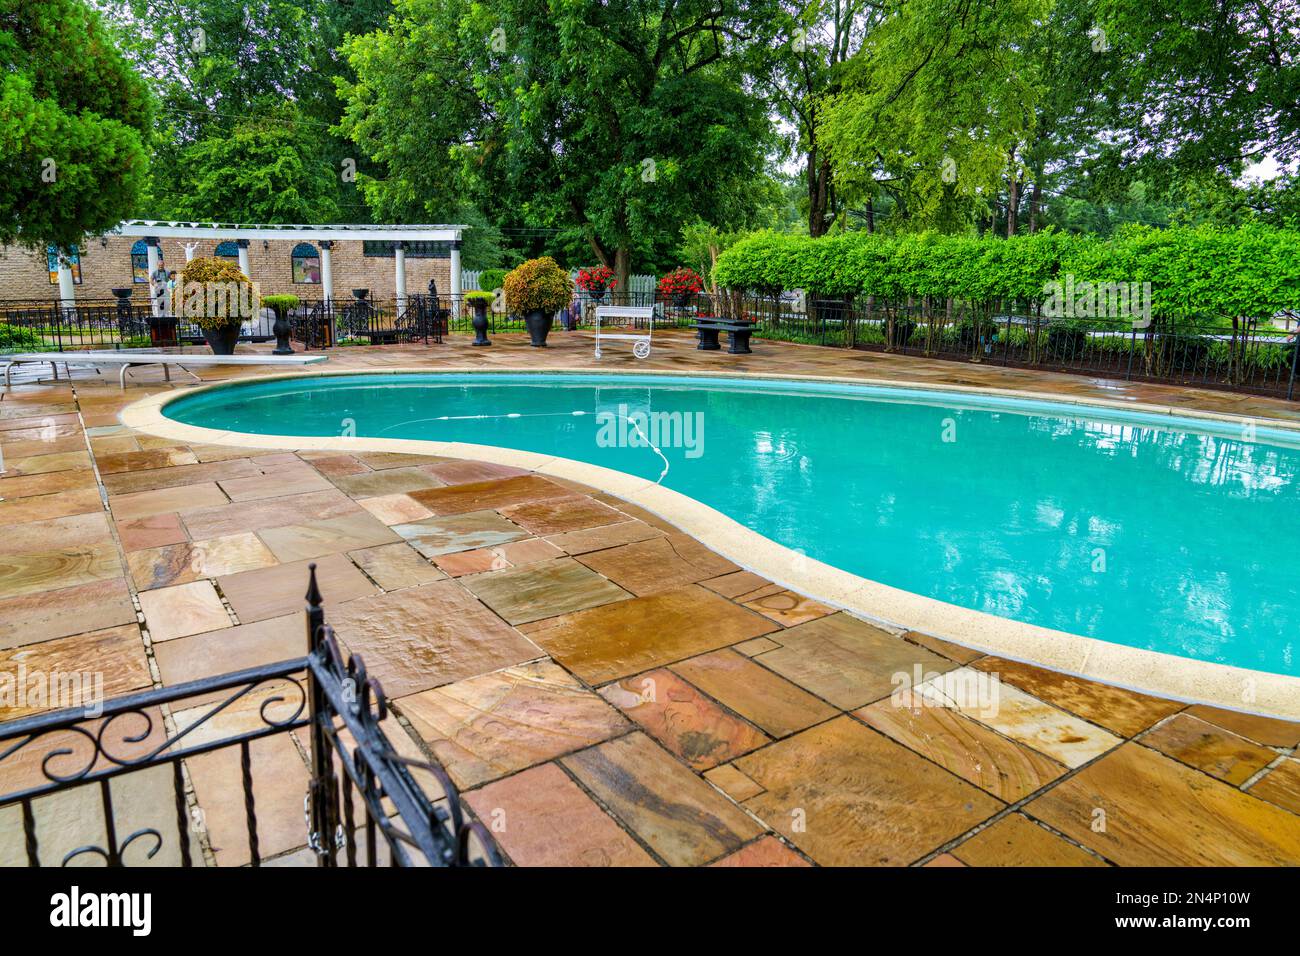 La piscine de Graceland, la maison d'Elvis Presley à Memphis, Tennessee. Banque D'Images